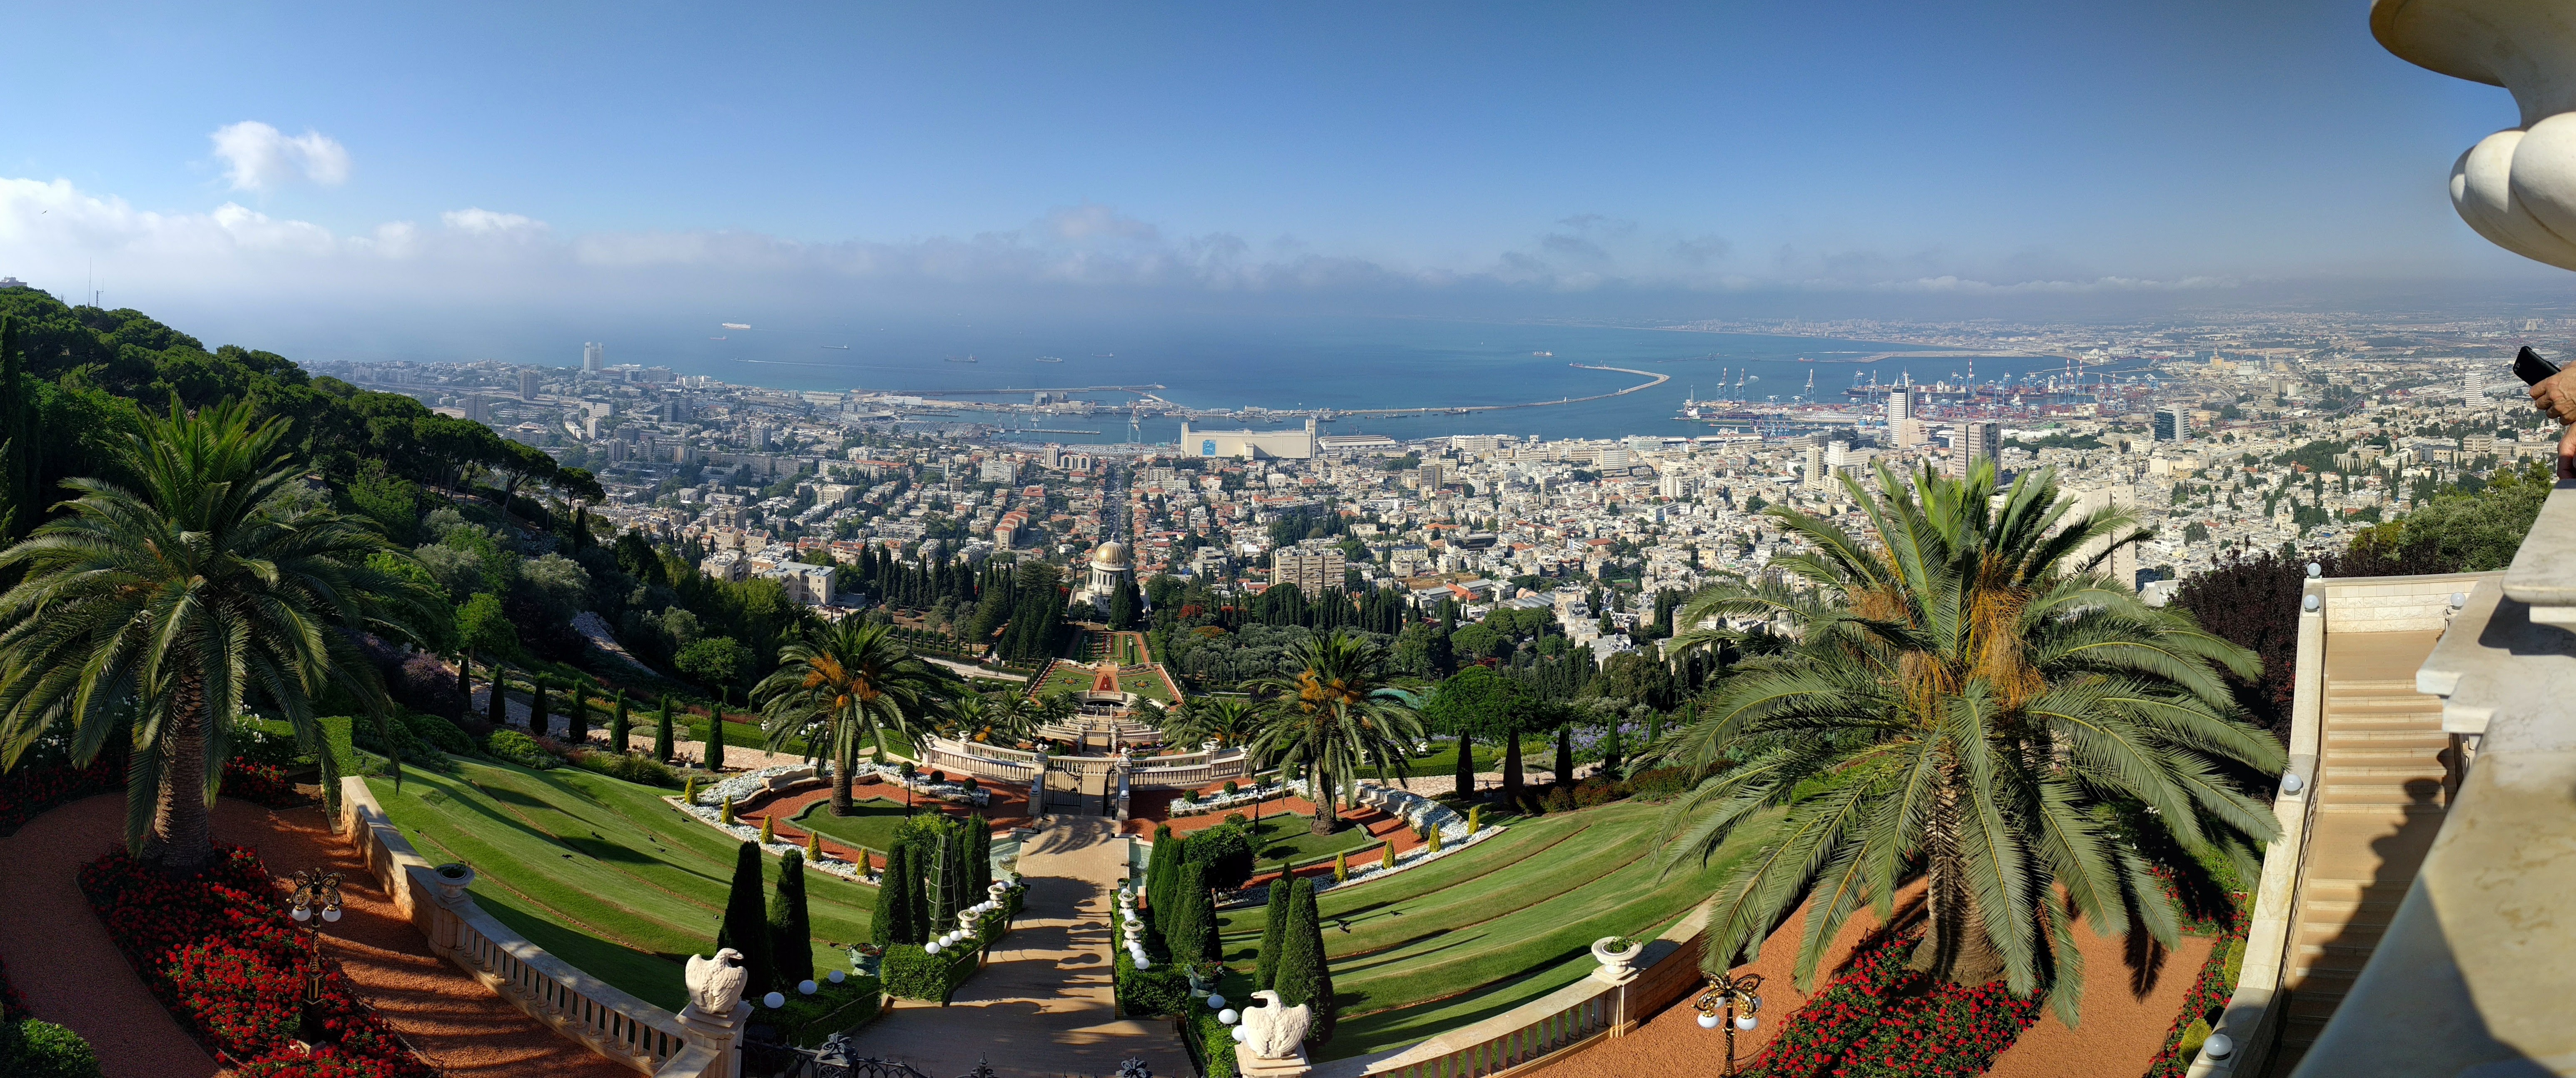 Panoramic image of Haifa from the Baha'i Gardens